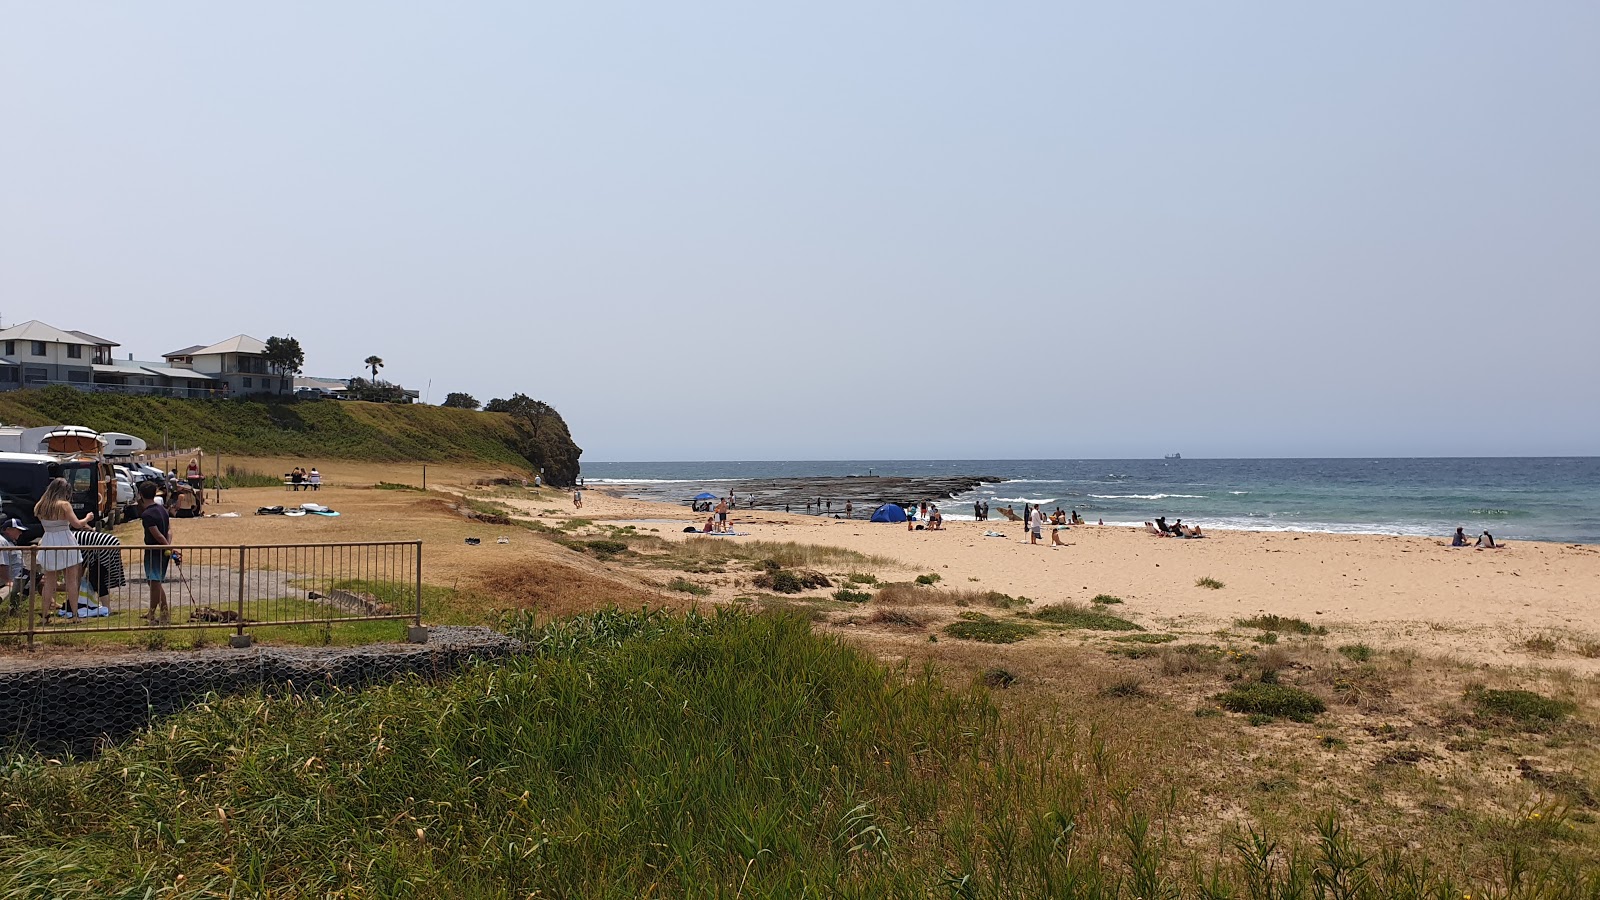 Foto de Sharky Beach - lugar popular entre los conocedores del relax